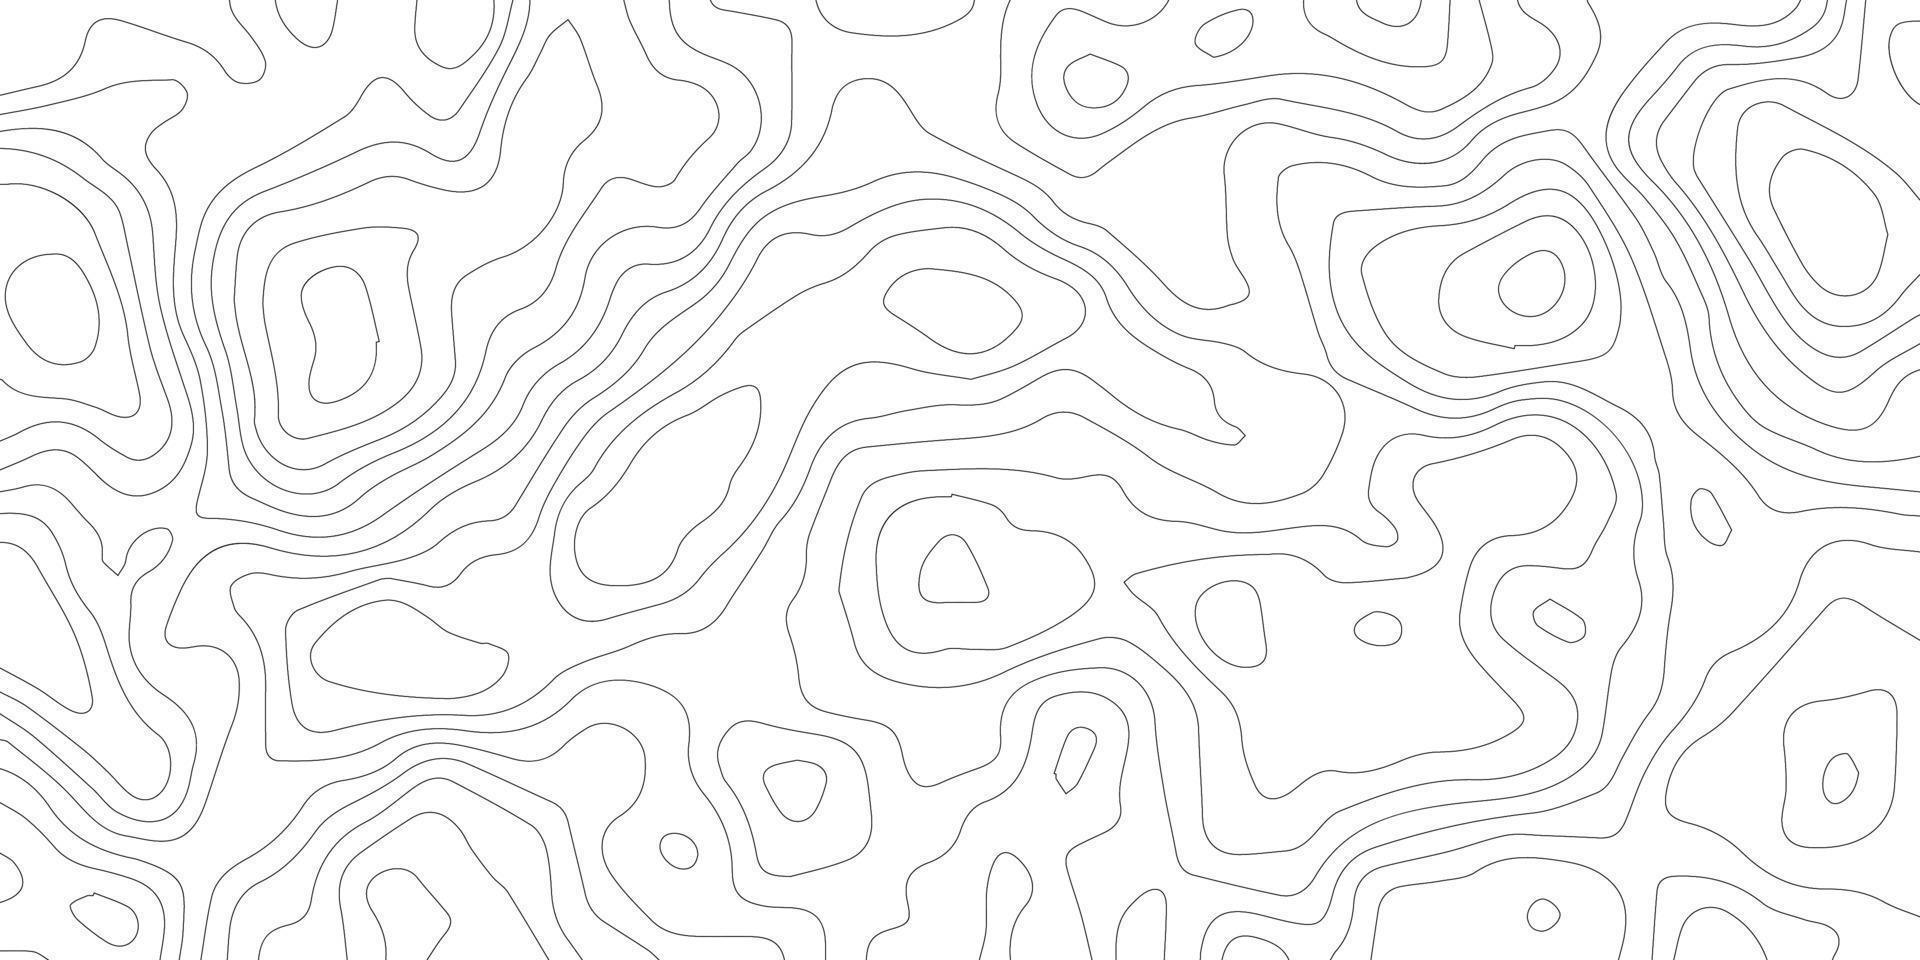 carte topographique, vecteur de fond abstrait et fond de carte de ligne de motif topographique. fond abstrait découpé en papier ondulé, fond de ligne ondulée, grille géographique. vecteur, illustration